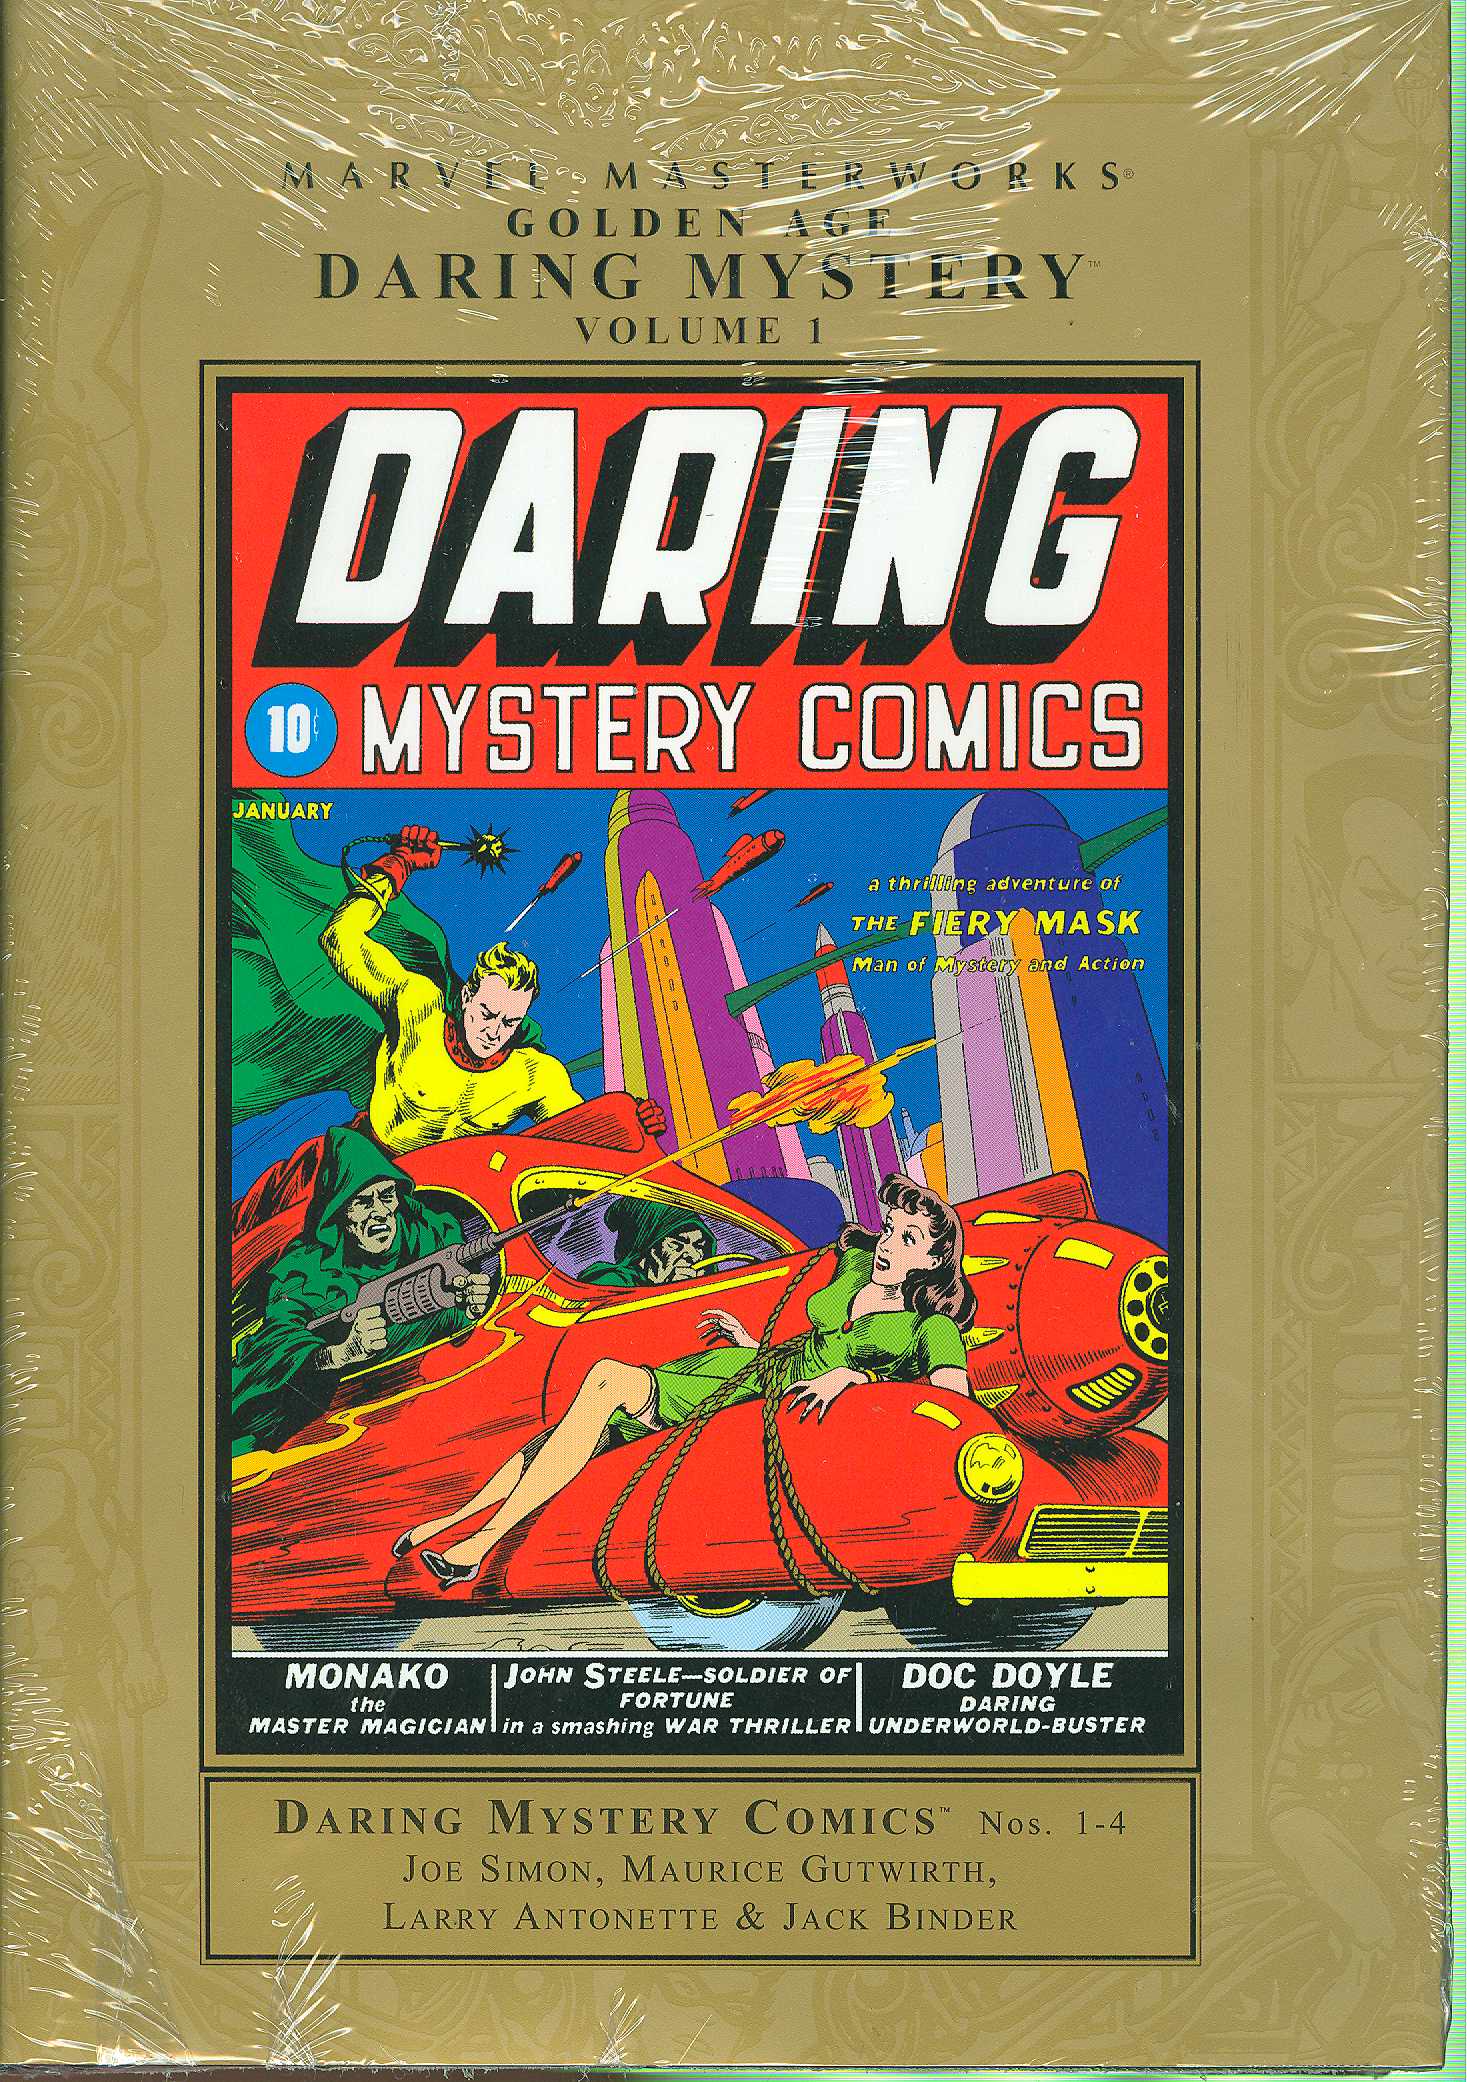 Marvel Masterworks Golden Age Daring Mystery Hardcover Volume 1